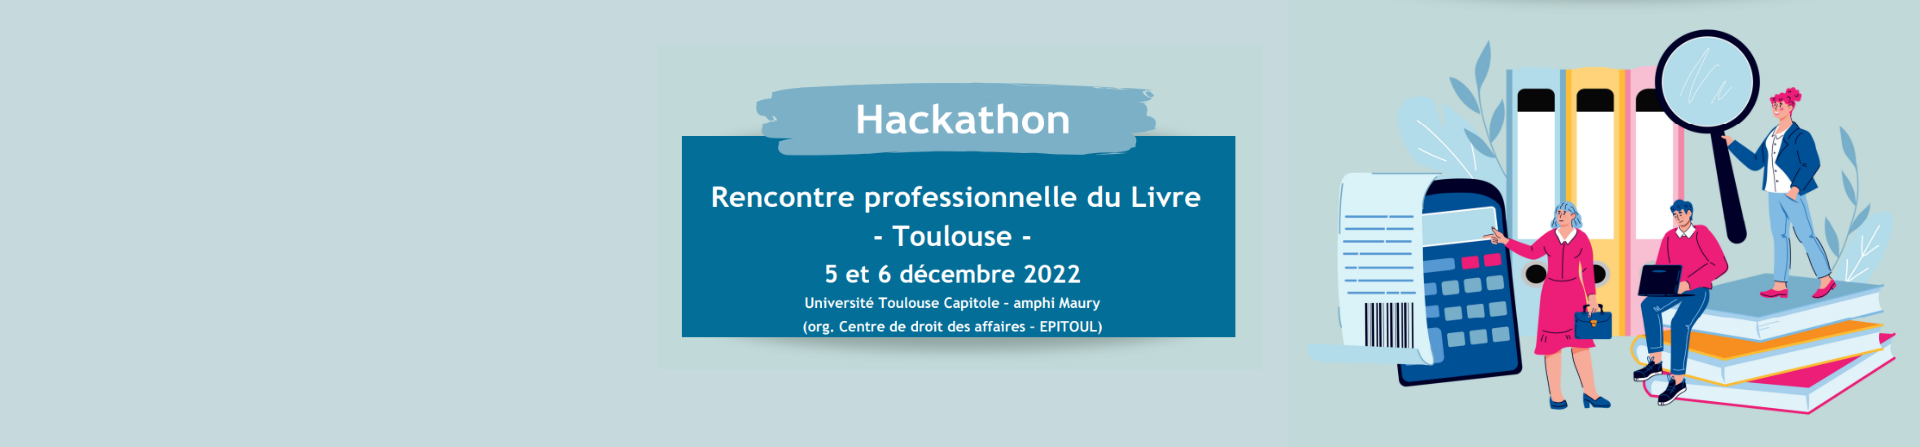 Hackathon Toulouse - Rencontre professionnelle du Livre